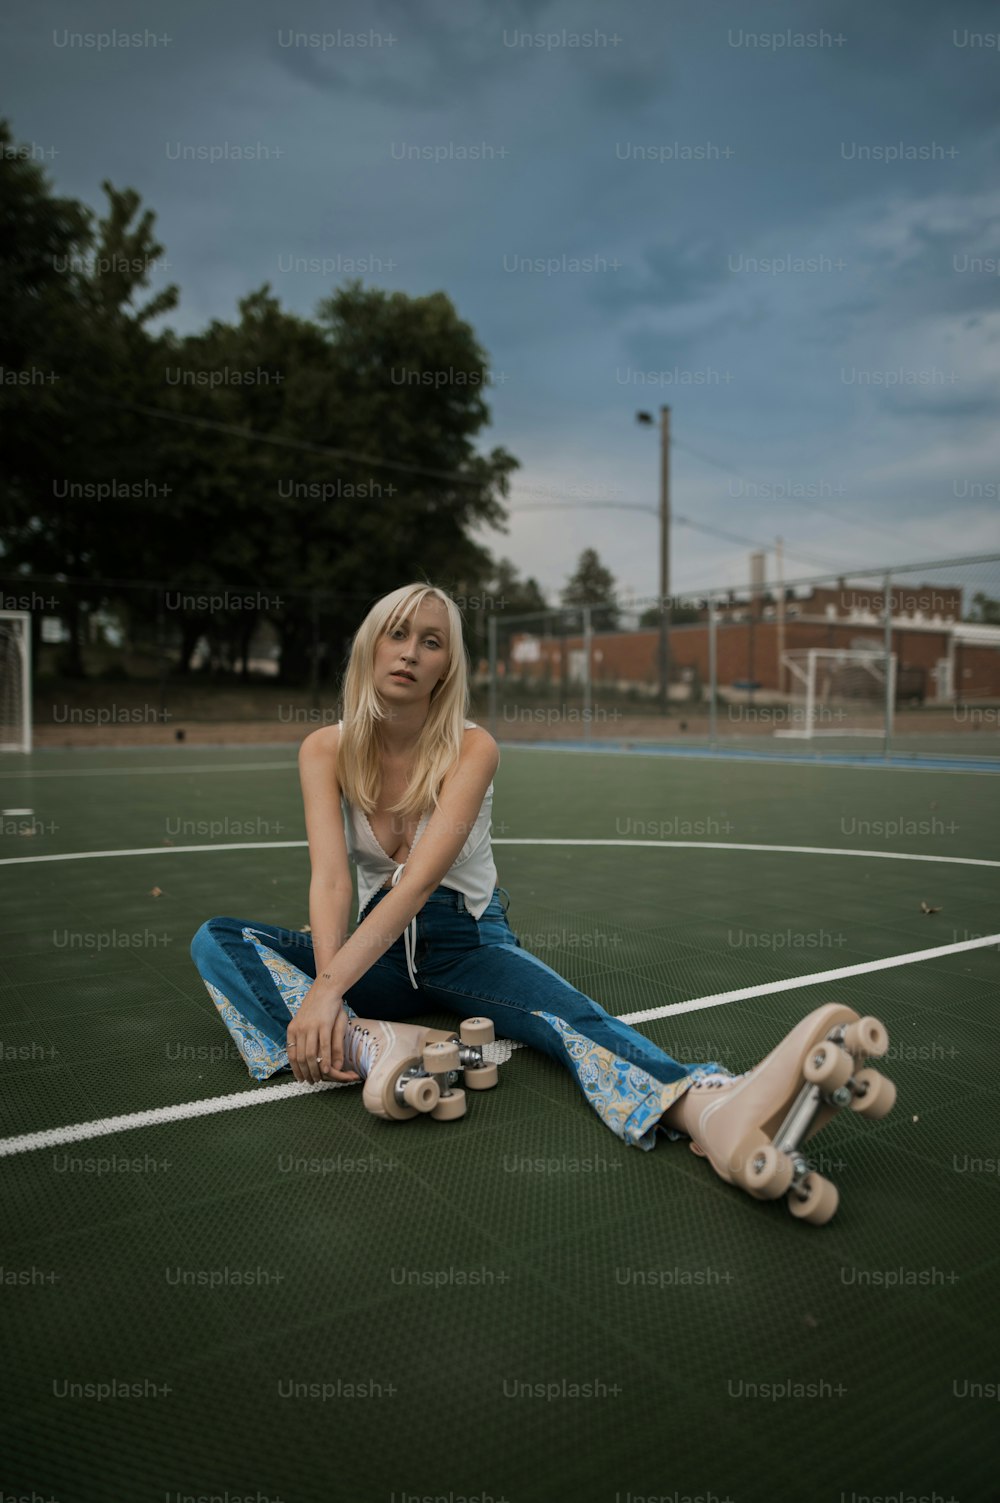 uma mulher sentada no chão com seu skate